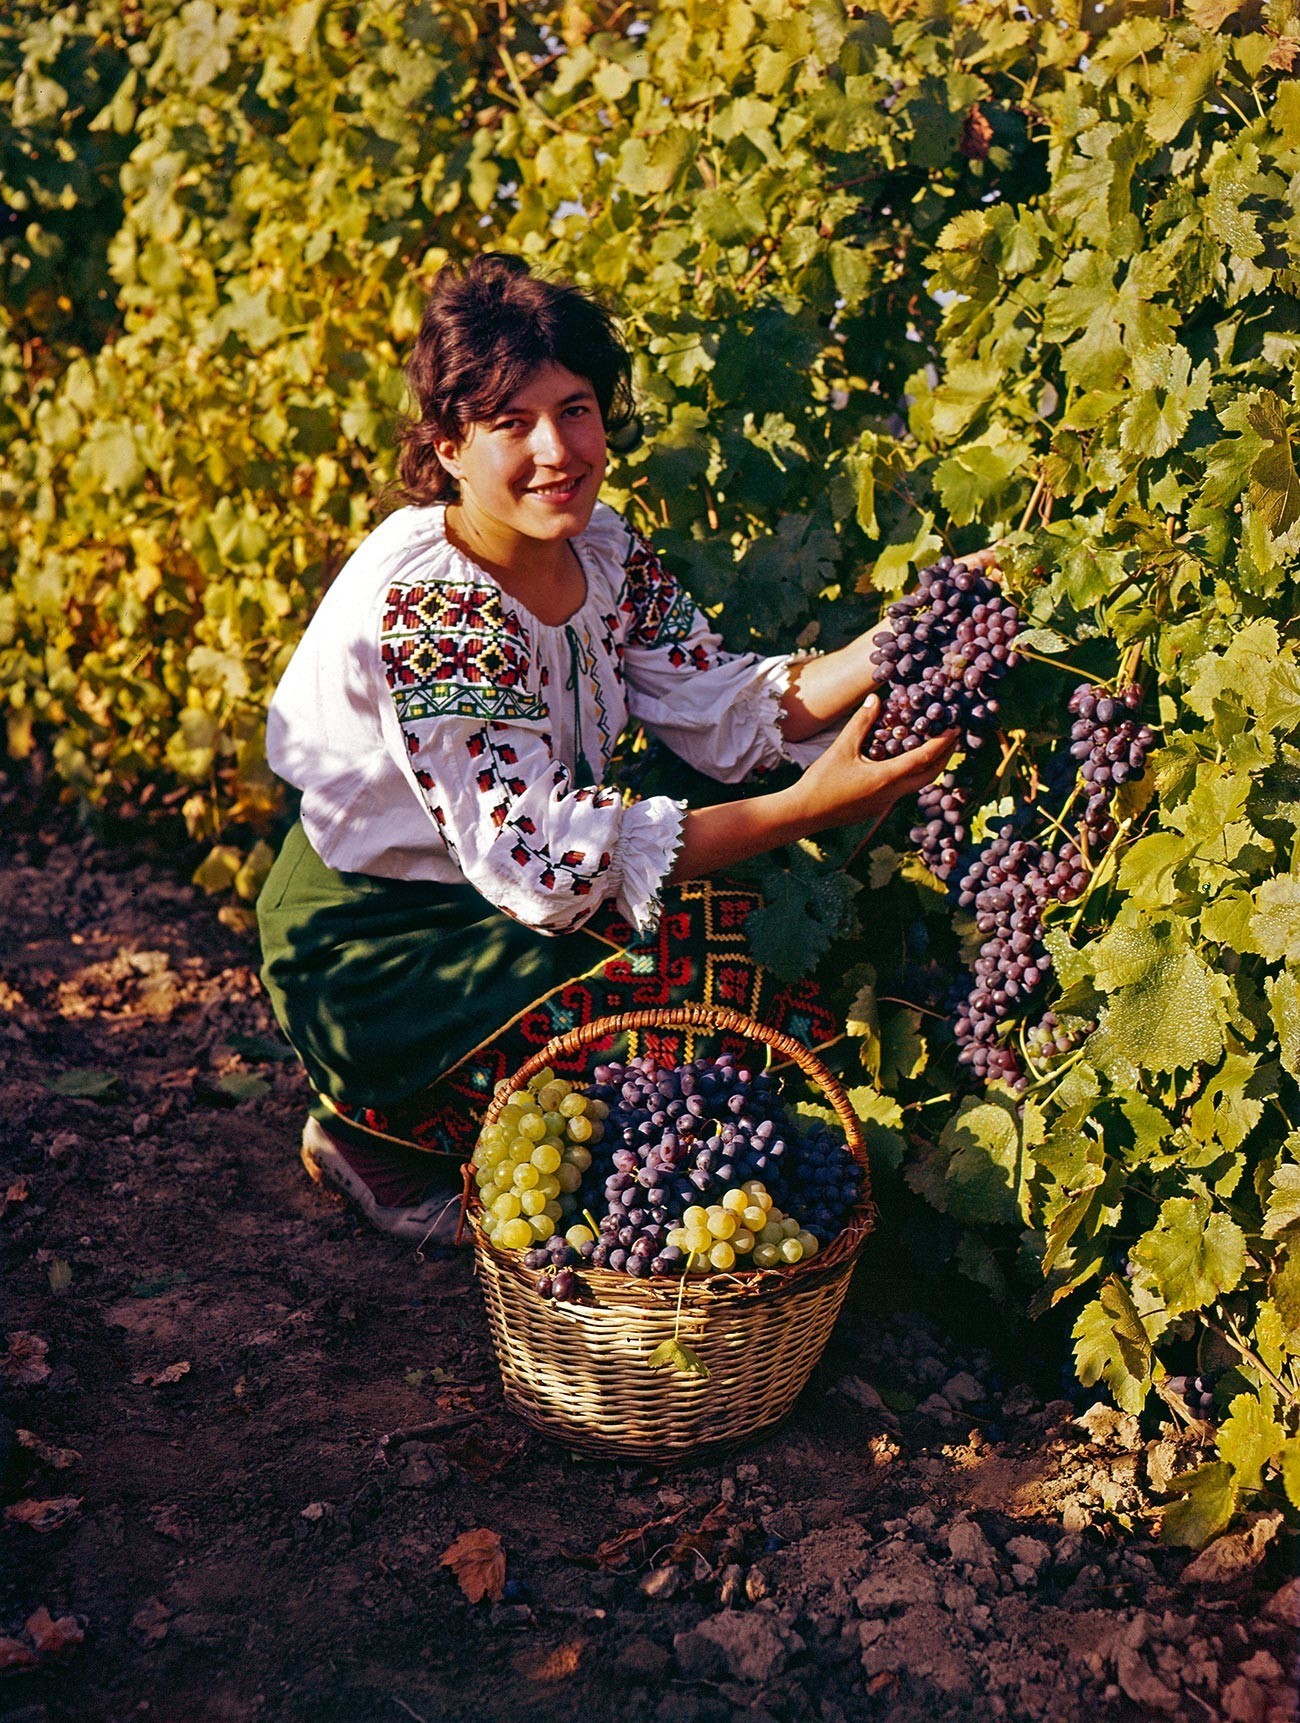 Trgatev v Moldavski SSR, 1972

